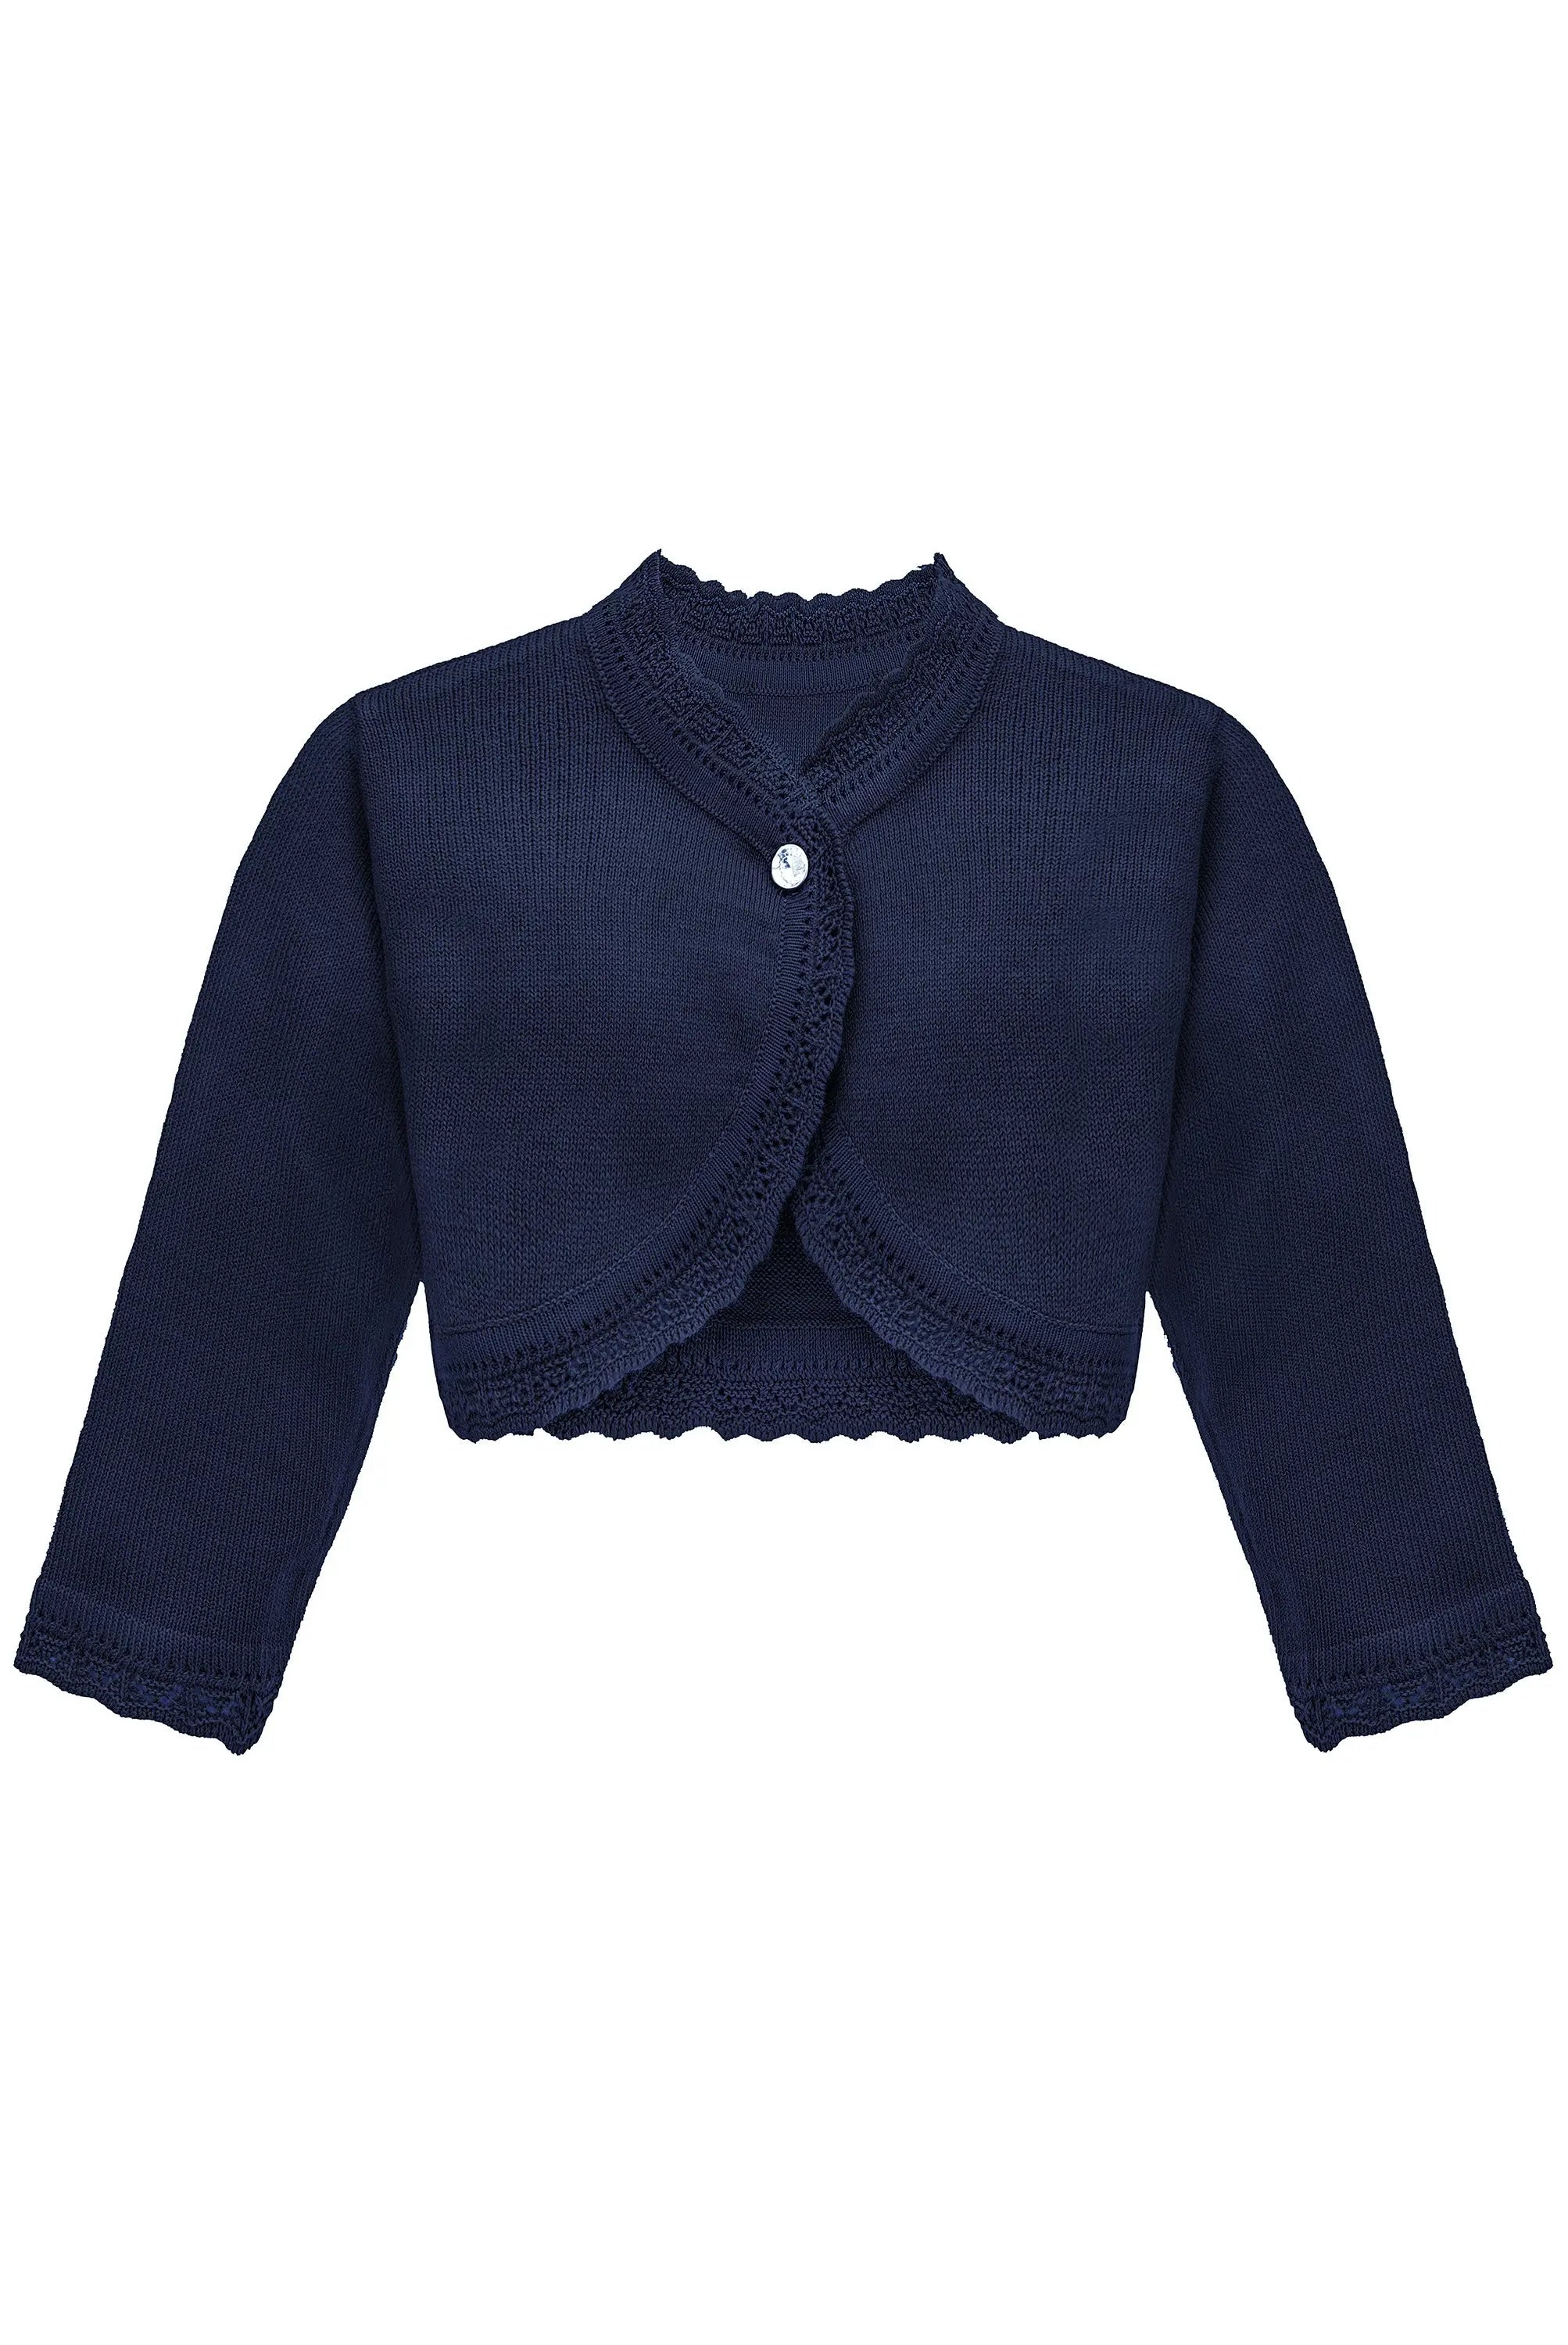 Baby Girls' Bolero Shrug Knit Long Sleeve Button Closure Cardigan